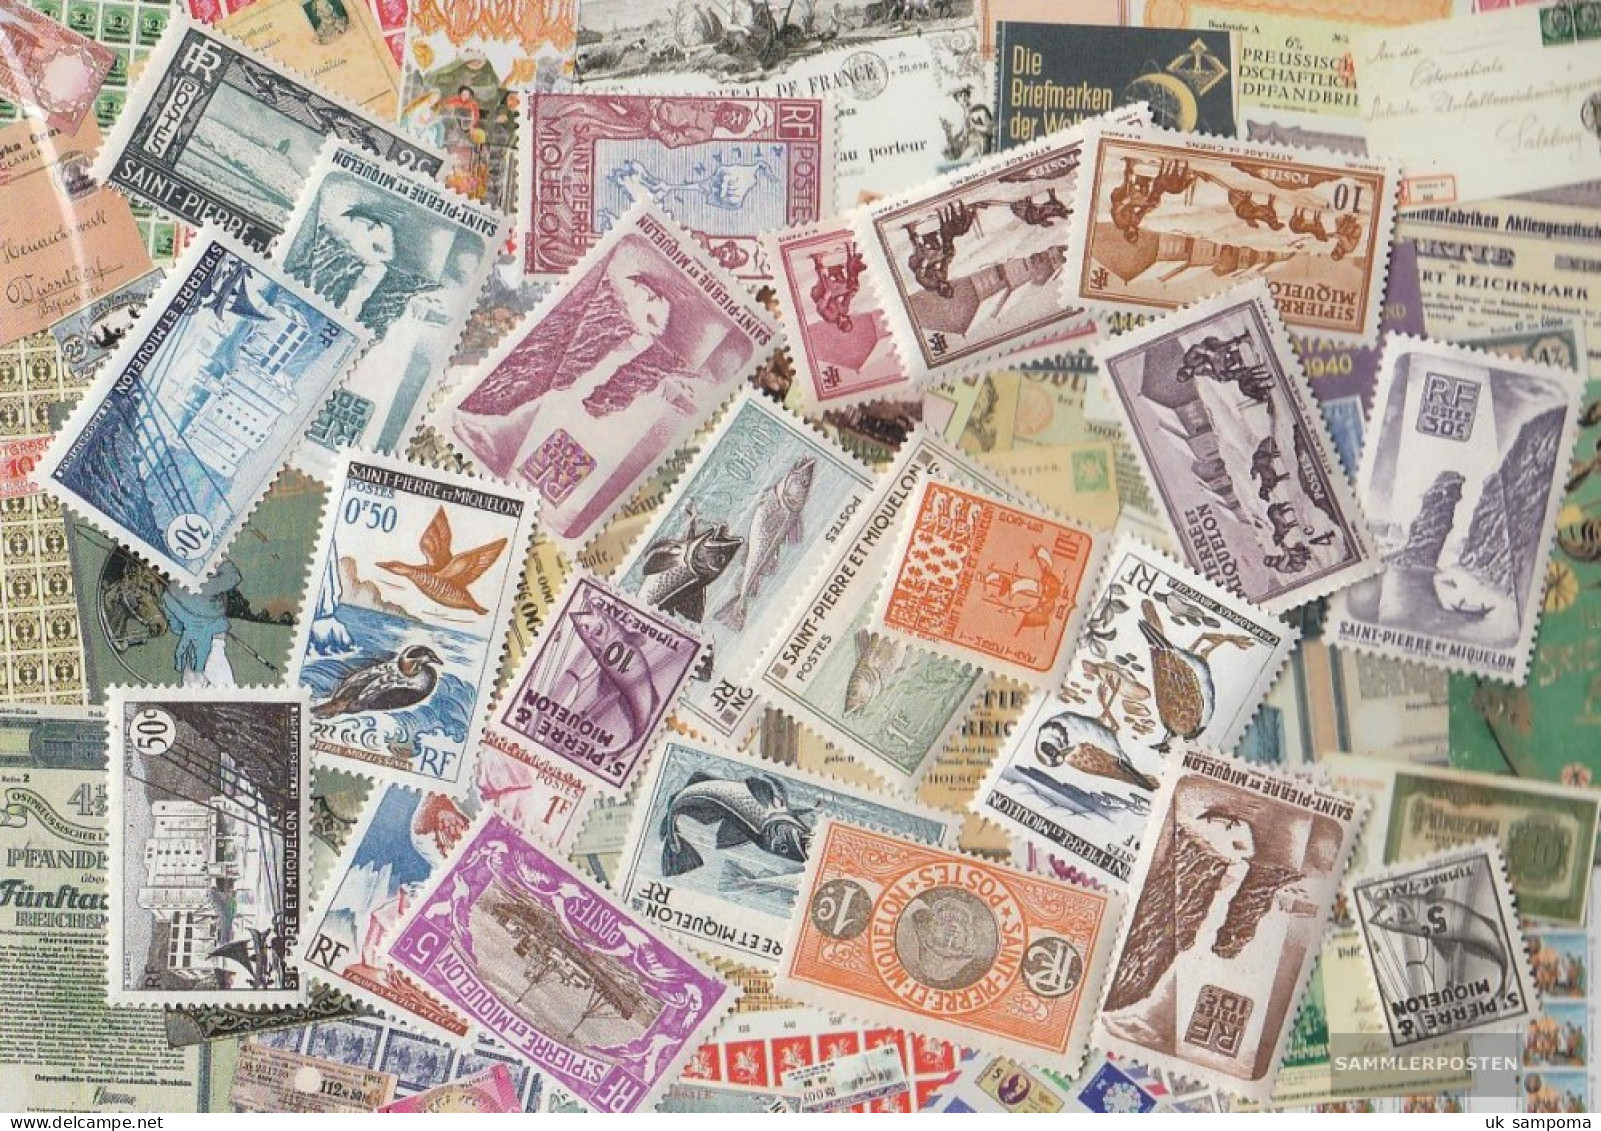 St. Pierre And Miquelon 25 Different Stamps - Collezioni & Lotti